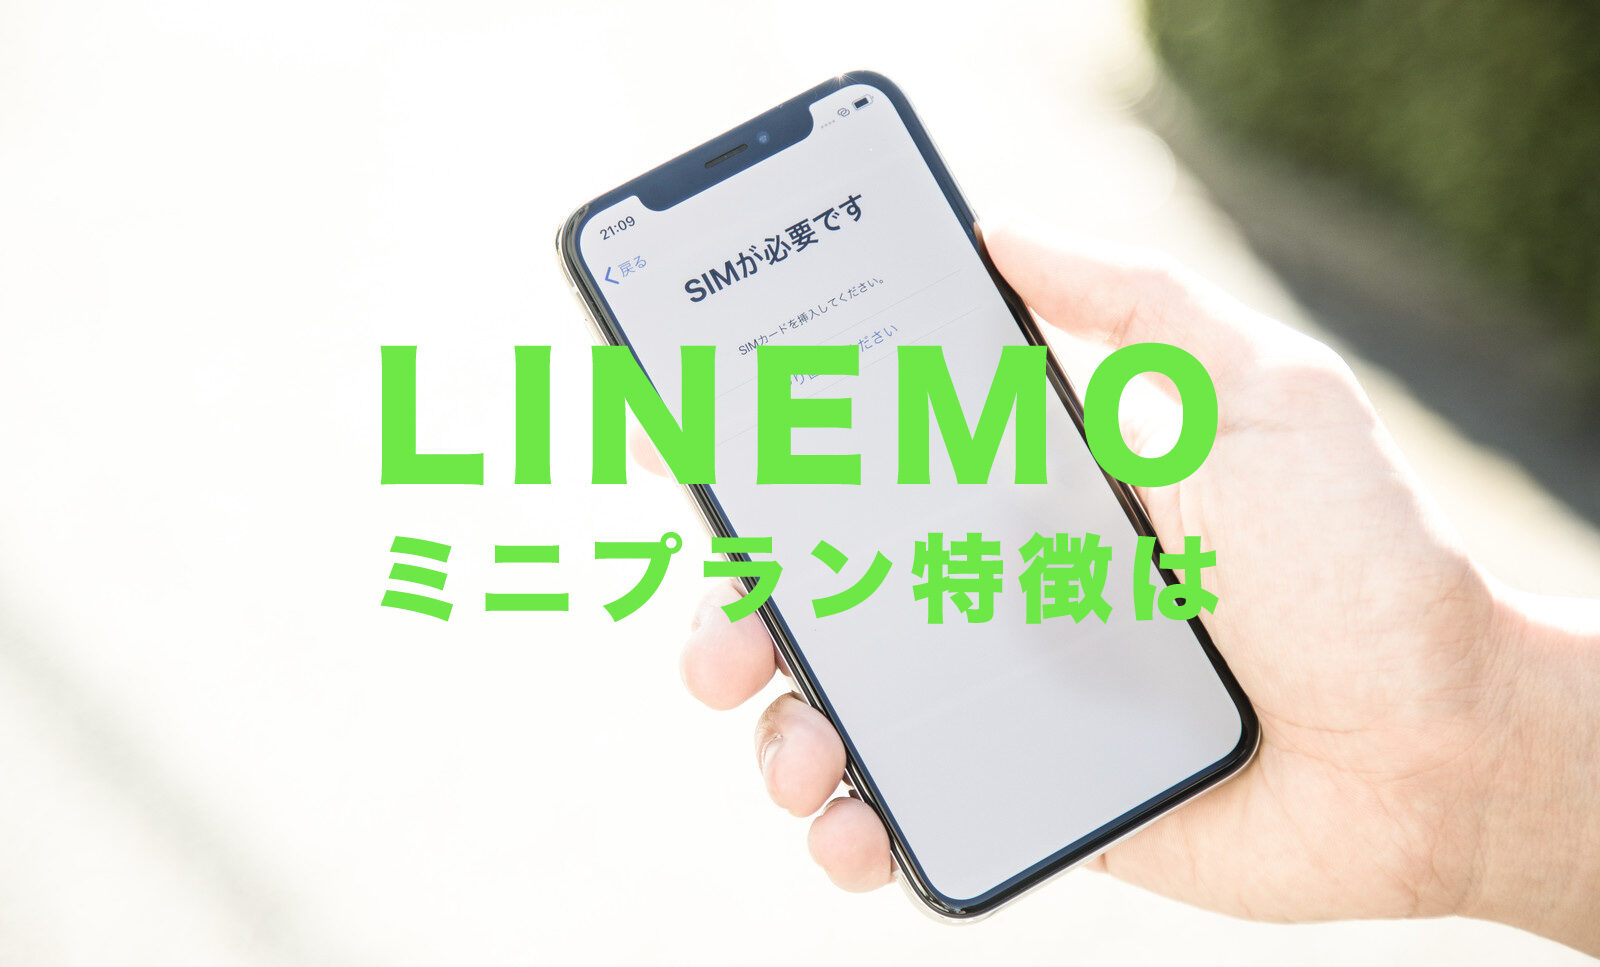 LINEMO(ラインモ)のミニプランは月額990円で3GBのデータ容量！プランの特徴を解説！のサムネイル画像